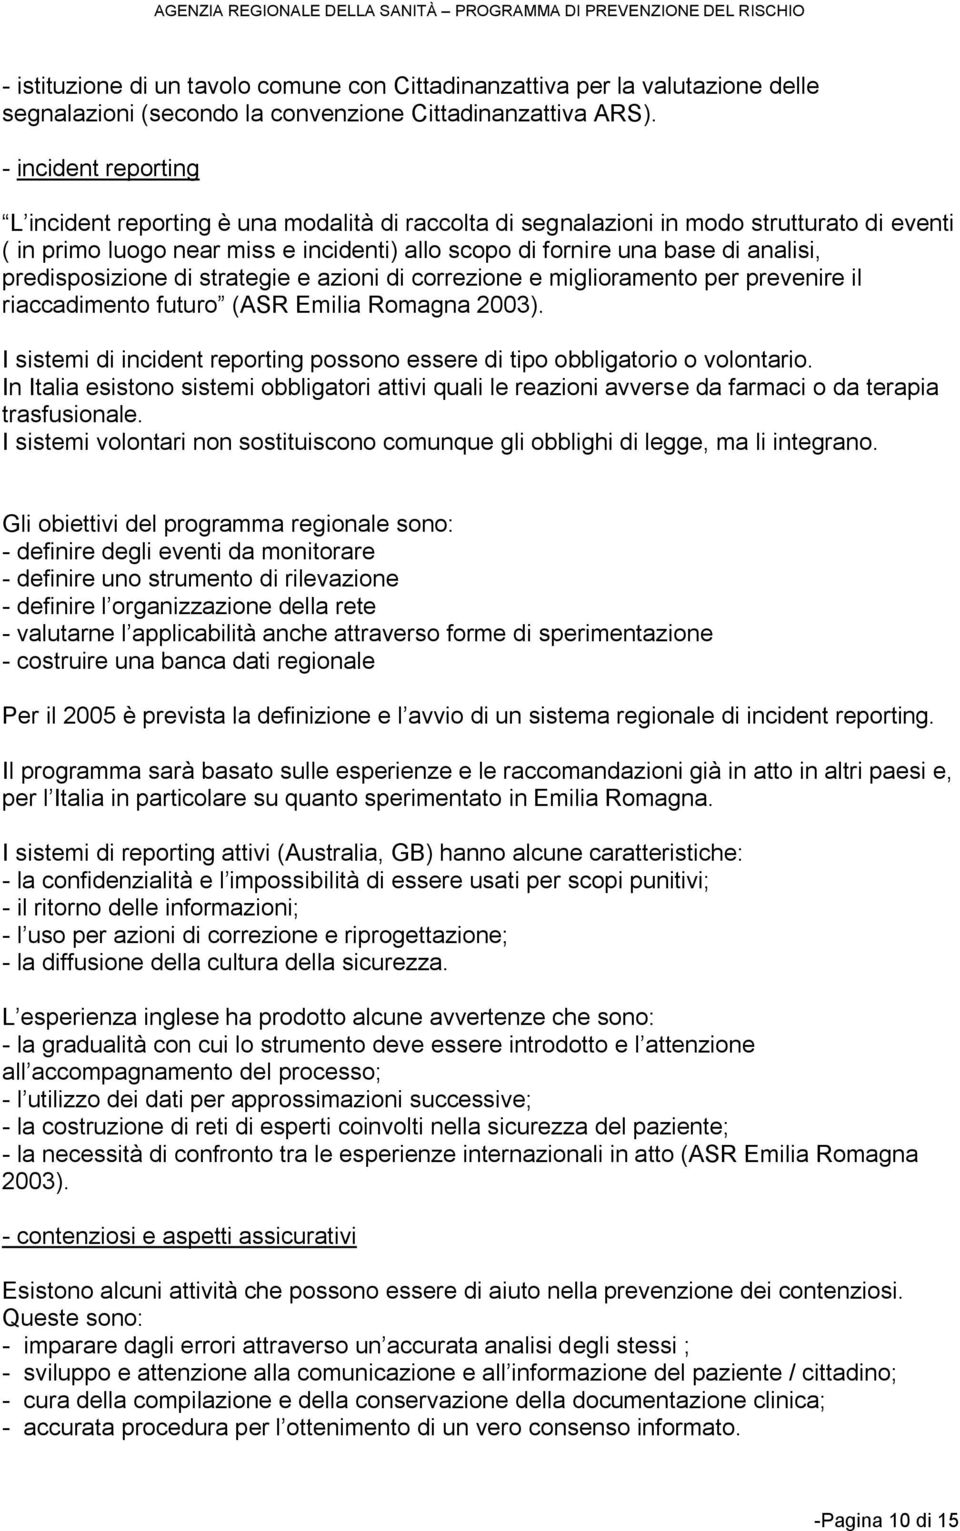 predisposizione di strategie e azioni di correzione e miglioramento per prevenire il riaccadimento futuro (ASR Emilia Romagna 2003).